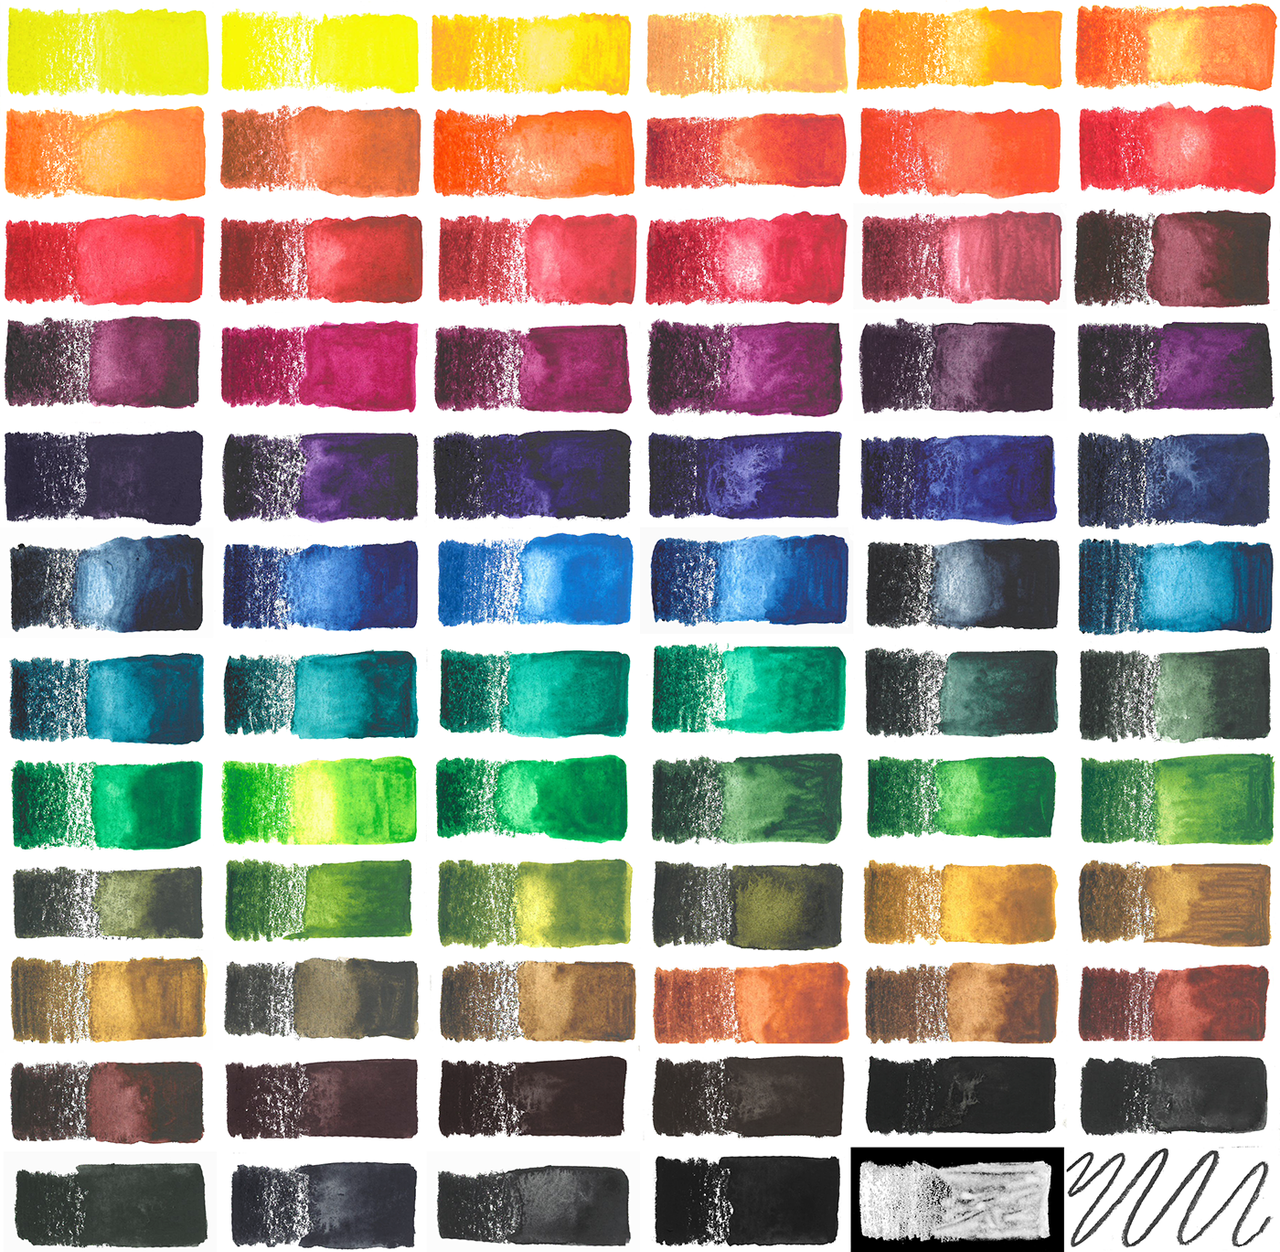 Printable Colour Chart for Derwent Watercolour Pencils - Payhip